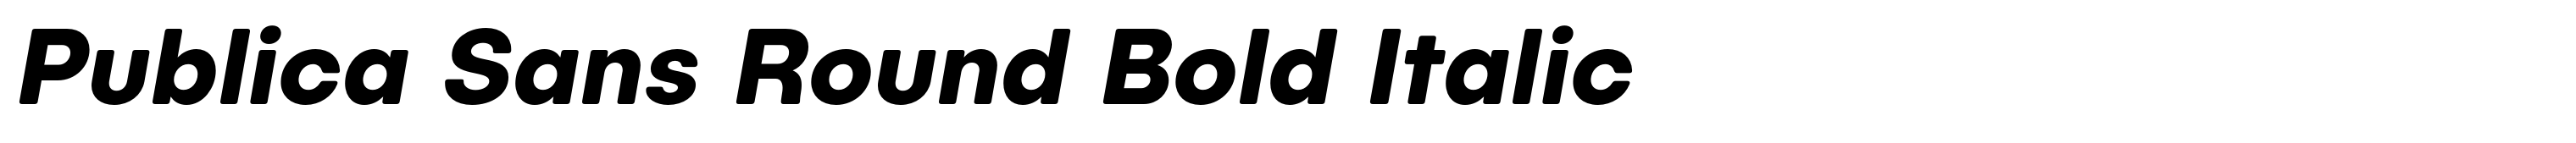 Publica Sans Round Bold Italic